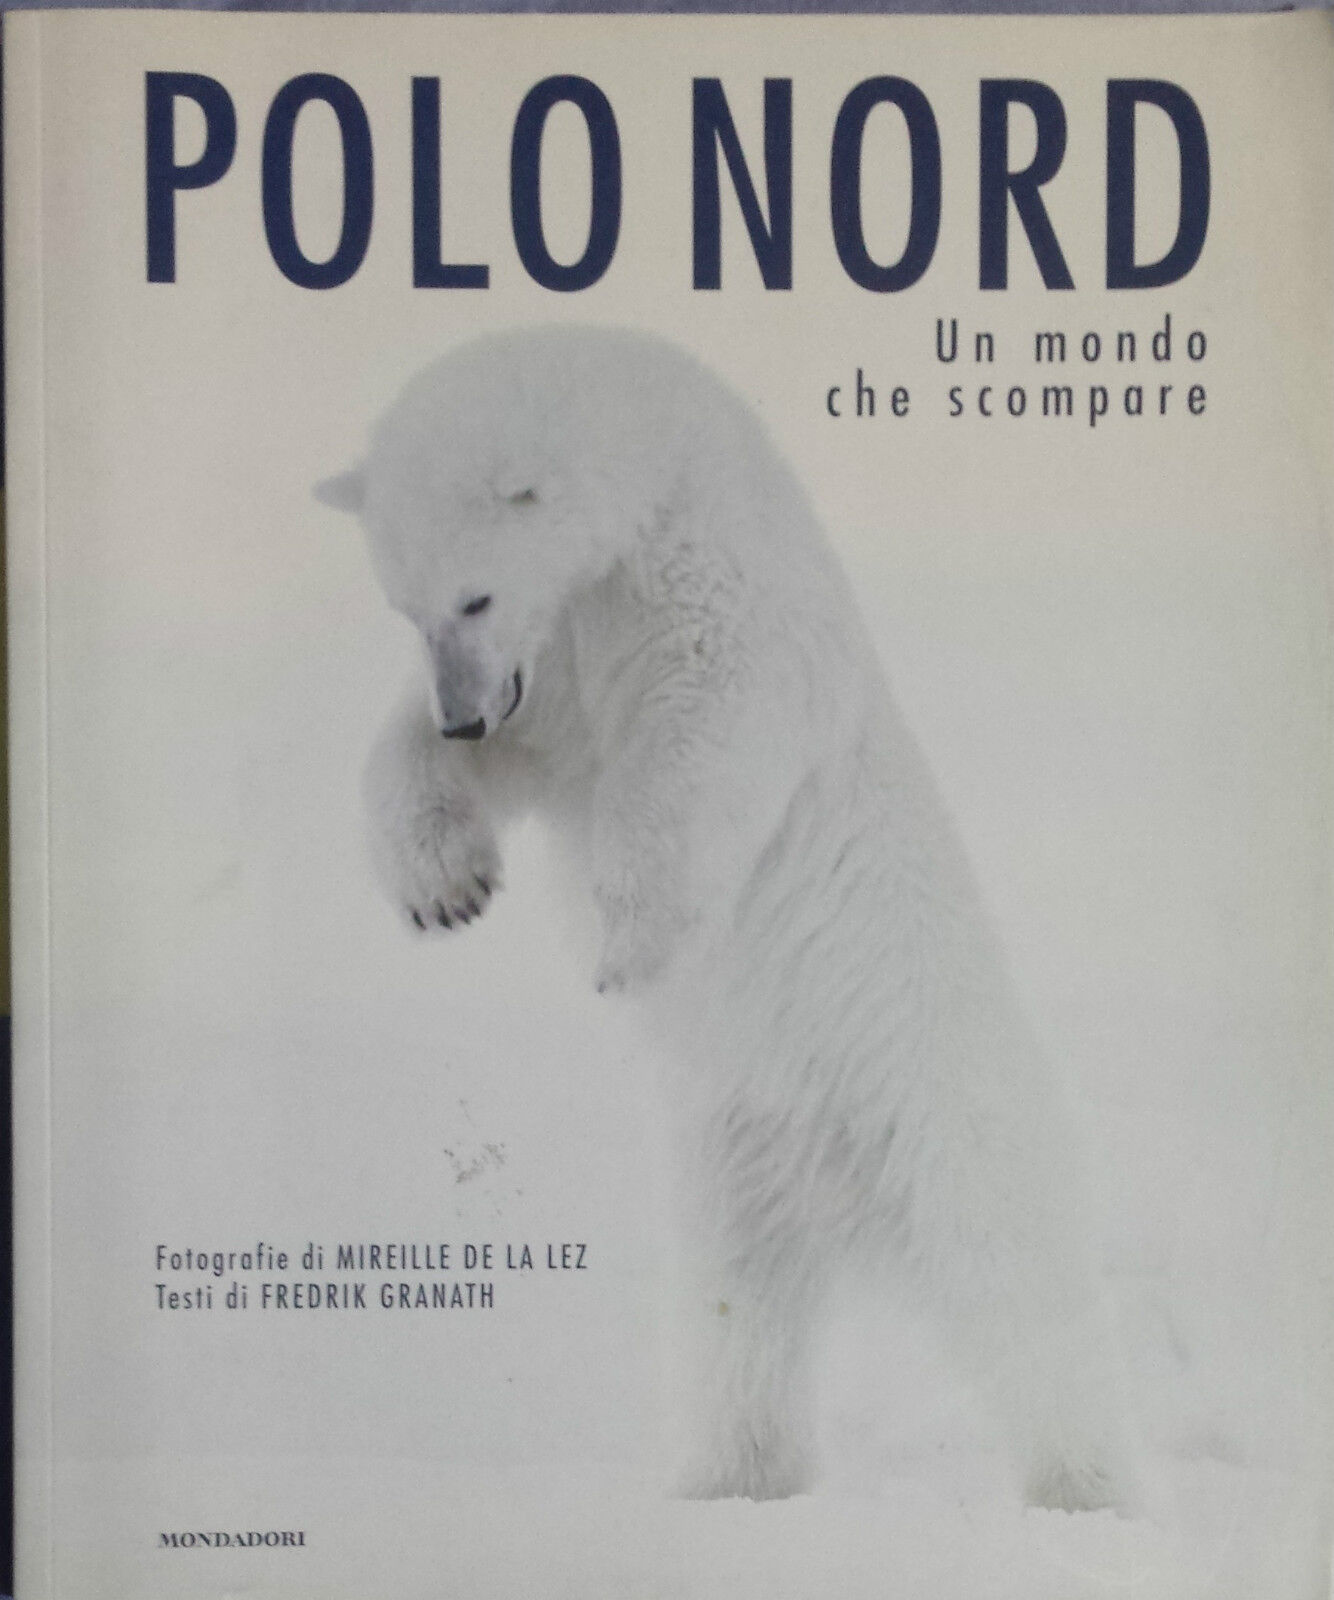 Polo Nord, un mondo che scompare - AA. VV. - Mondadori Electa - 2007 - G libro usato